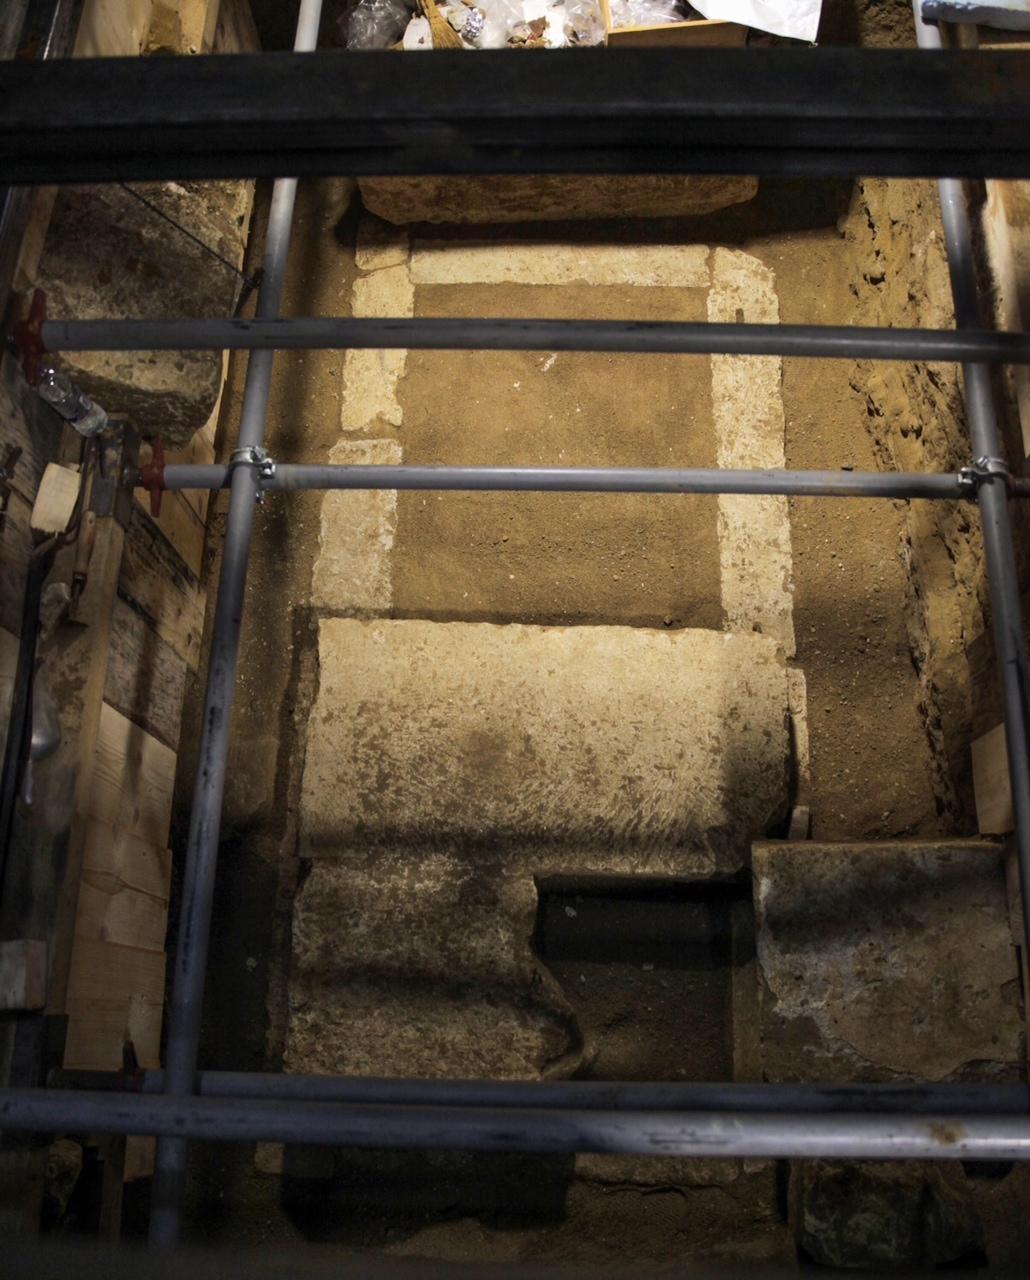 ΙΣΤΟΡΙΚΕΣ ΑΠΟΚΑΛΥΨΕΙΣ-Βρέθηκε ο σκελετός του νεκρού στην Αμφίπολη-ΔΕΙΤΕ ΦΩΤΟ